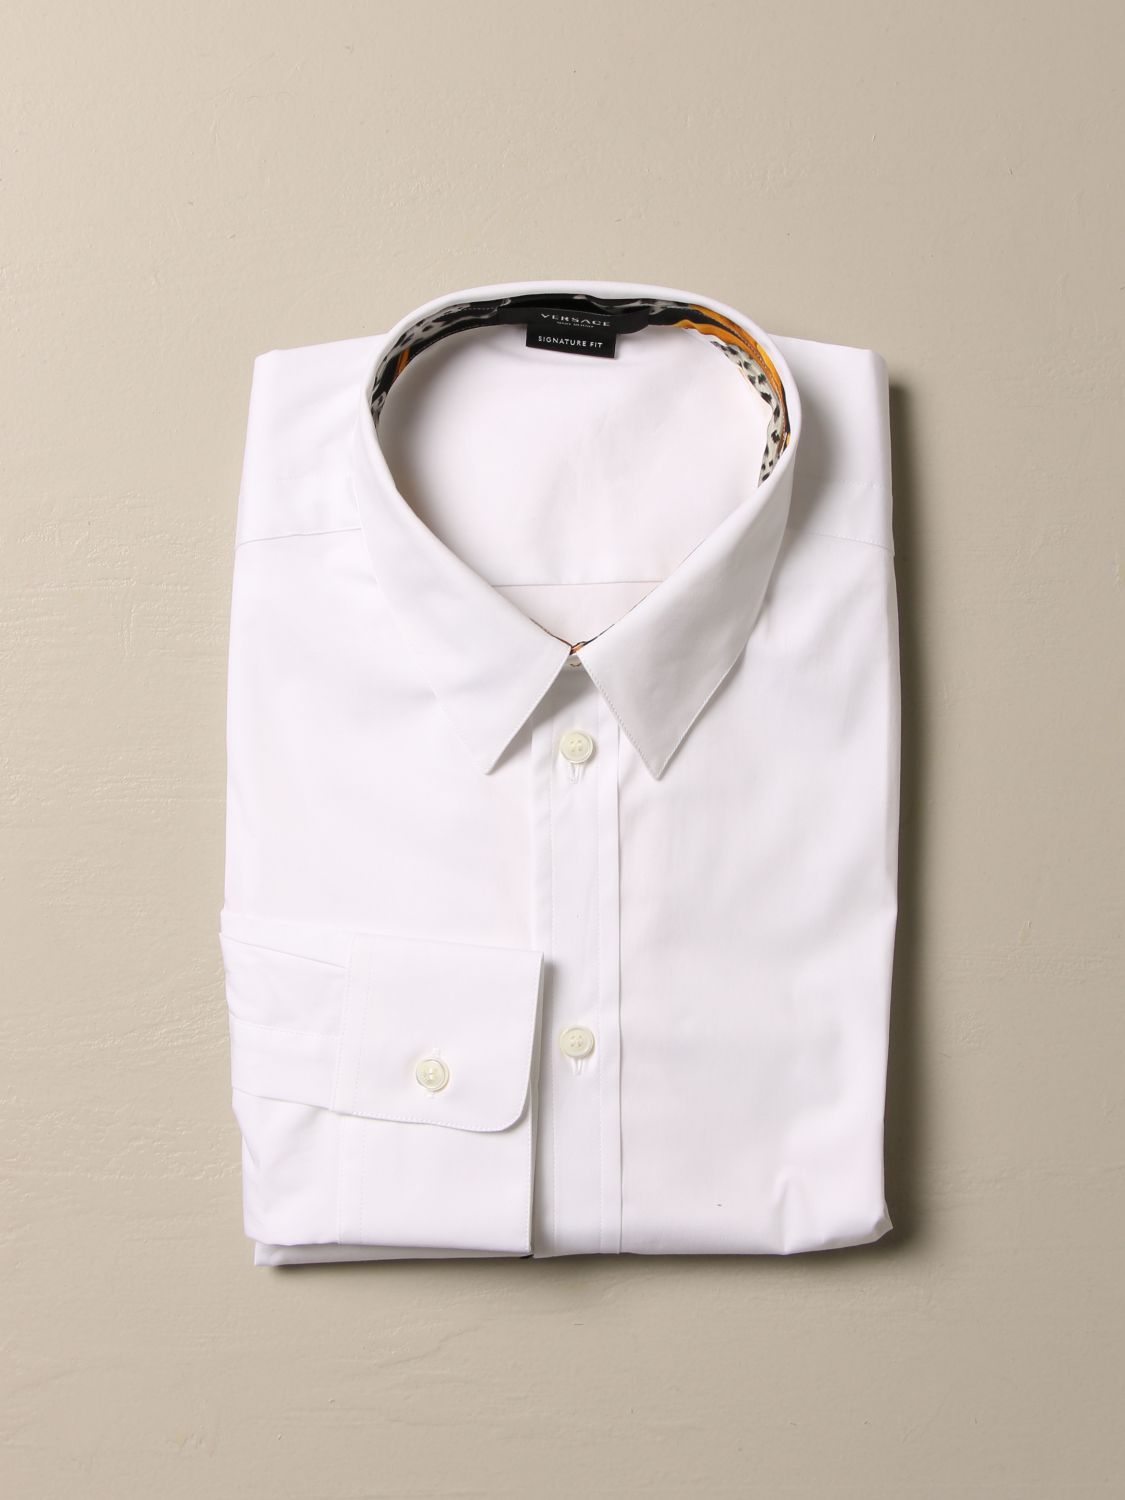 versace white shirt mens